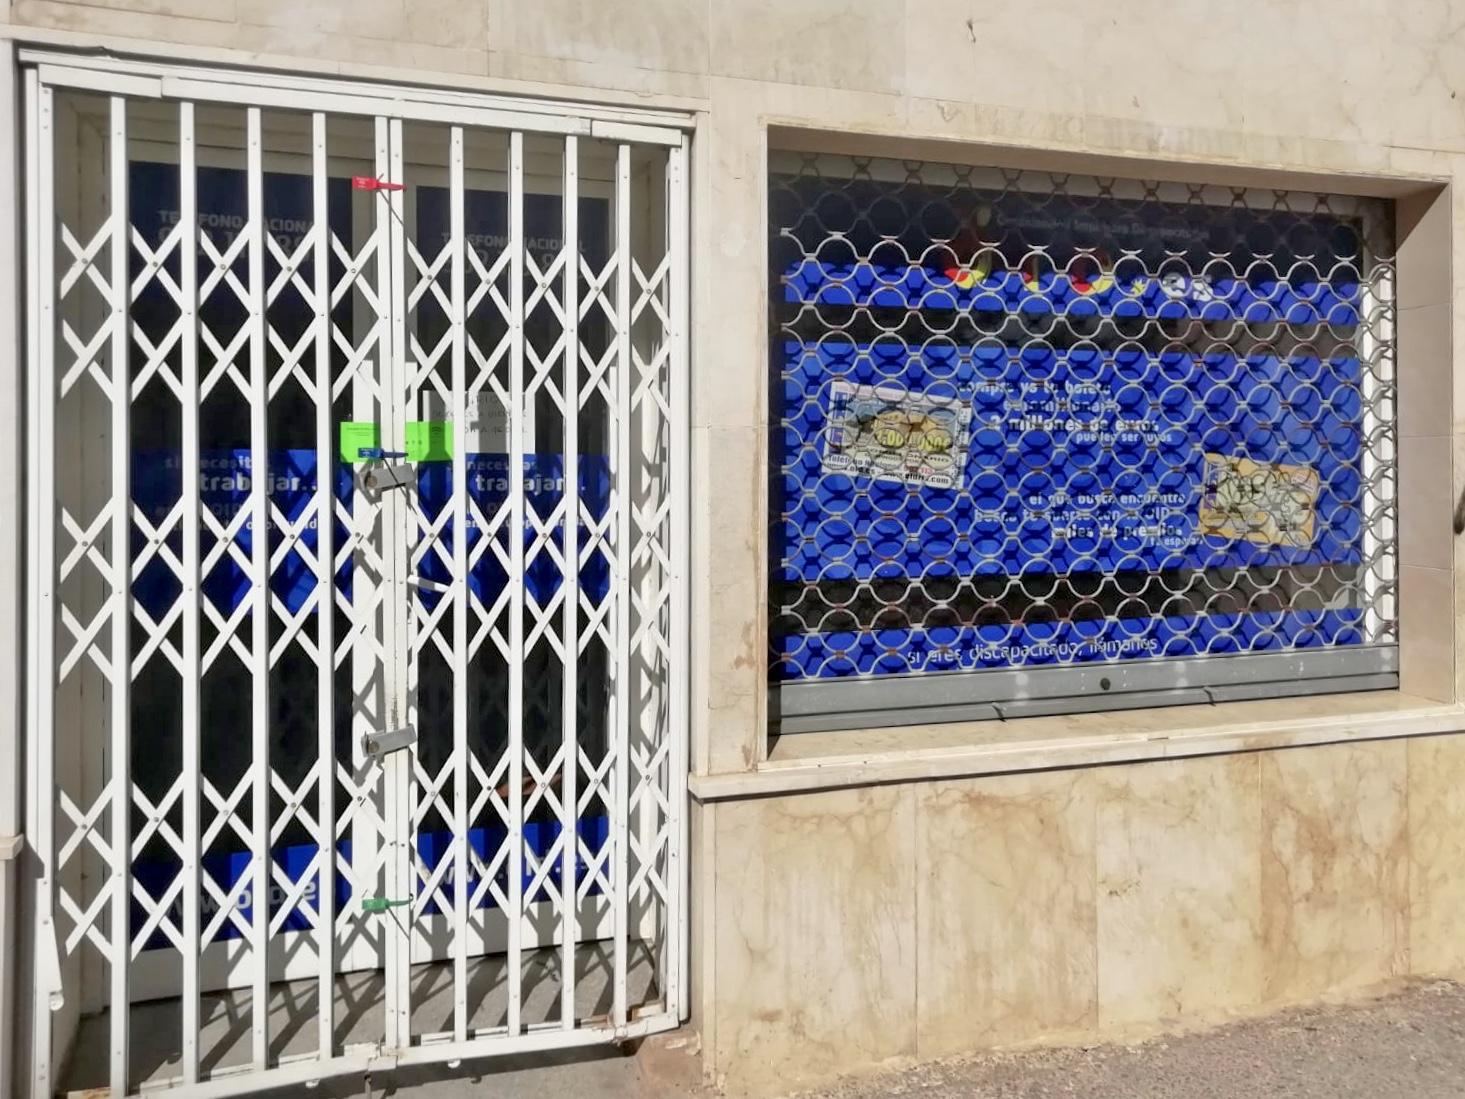 La Junta de Andalucía clausura las oficinas de OID por juego ilegal